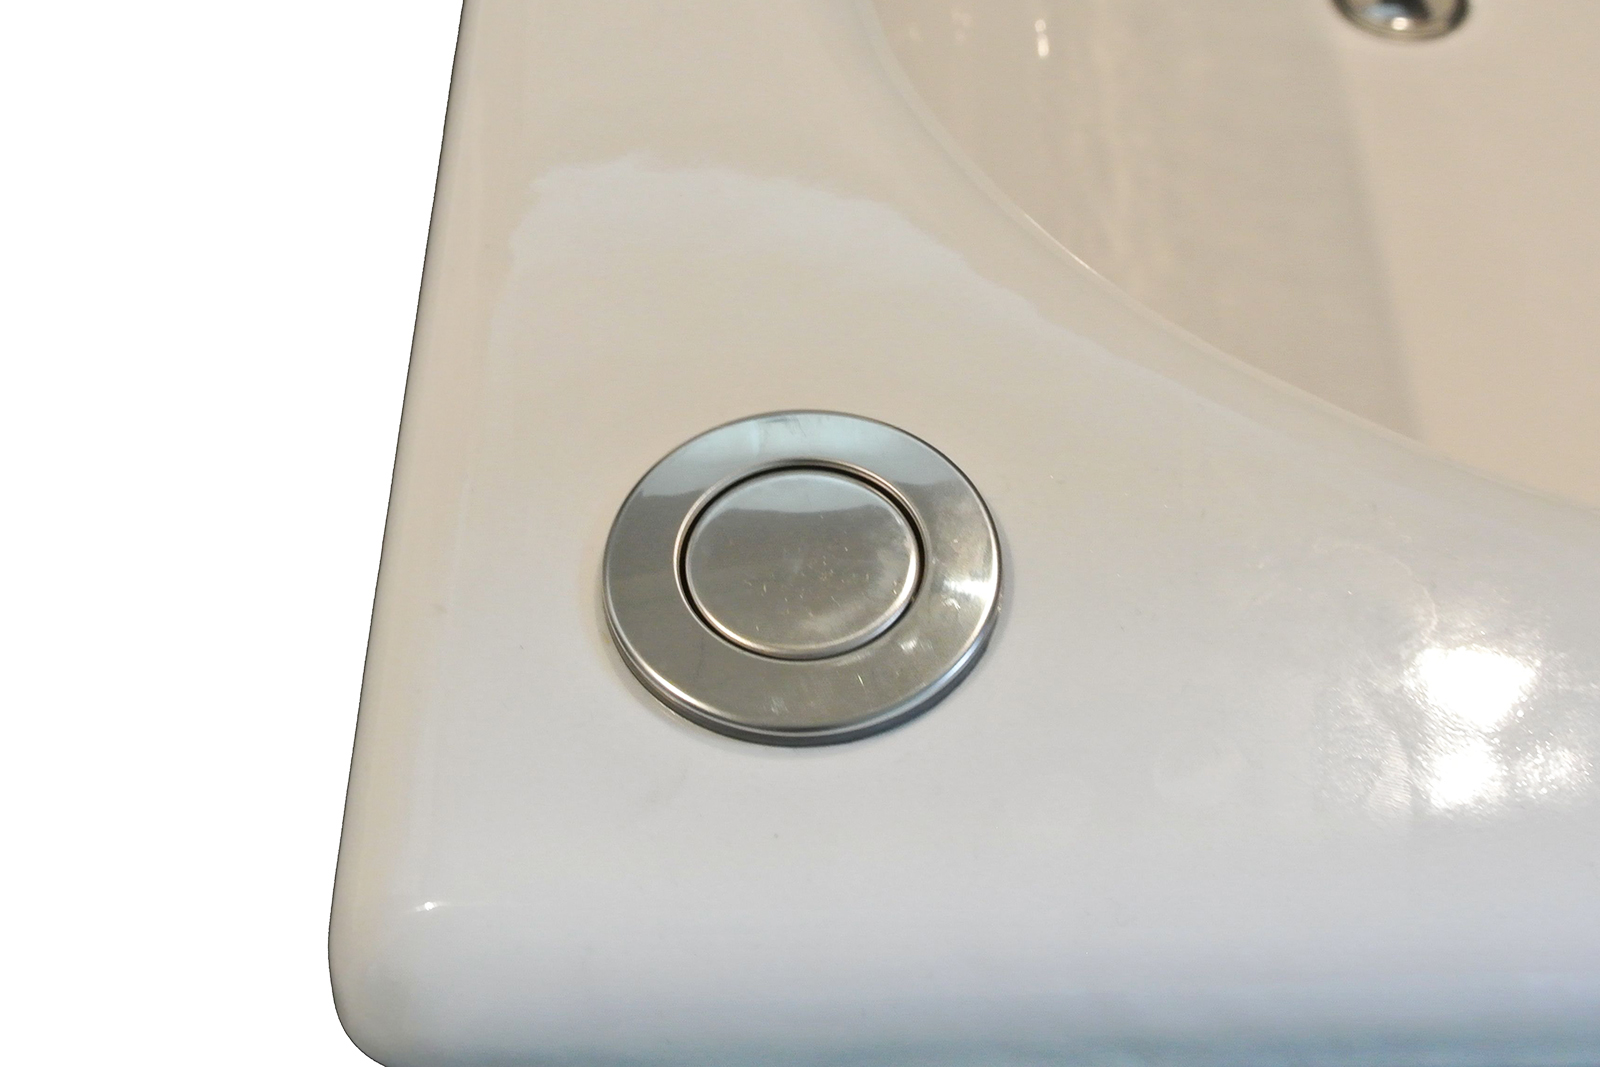 鋳物ホーロー浴槽 1470 埋込タイプ KB-BT004-05-G122 ワンプッシュ排水栓。浴槽の設置位置によって「左向き」か「右向き」かをご選択ください